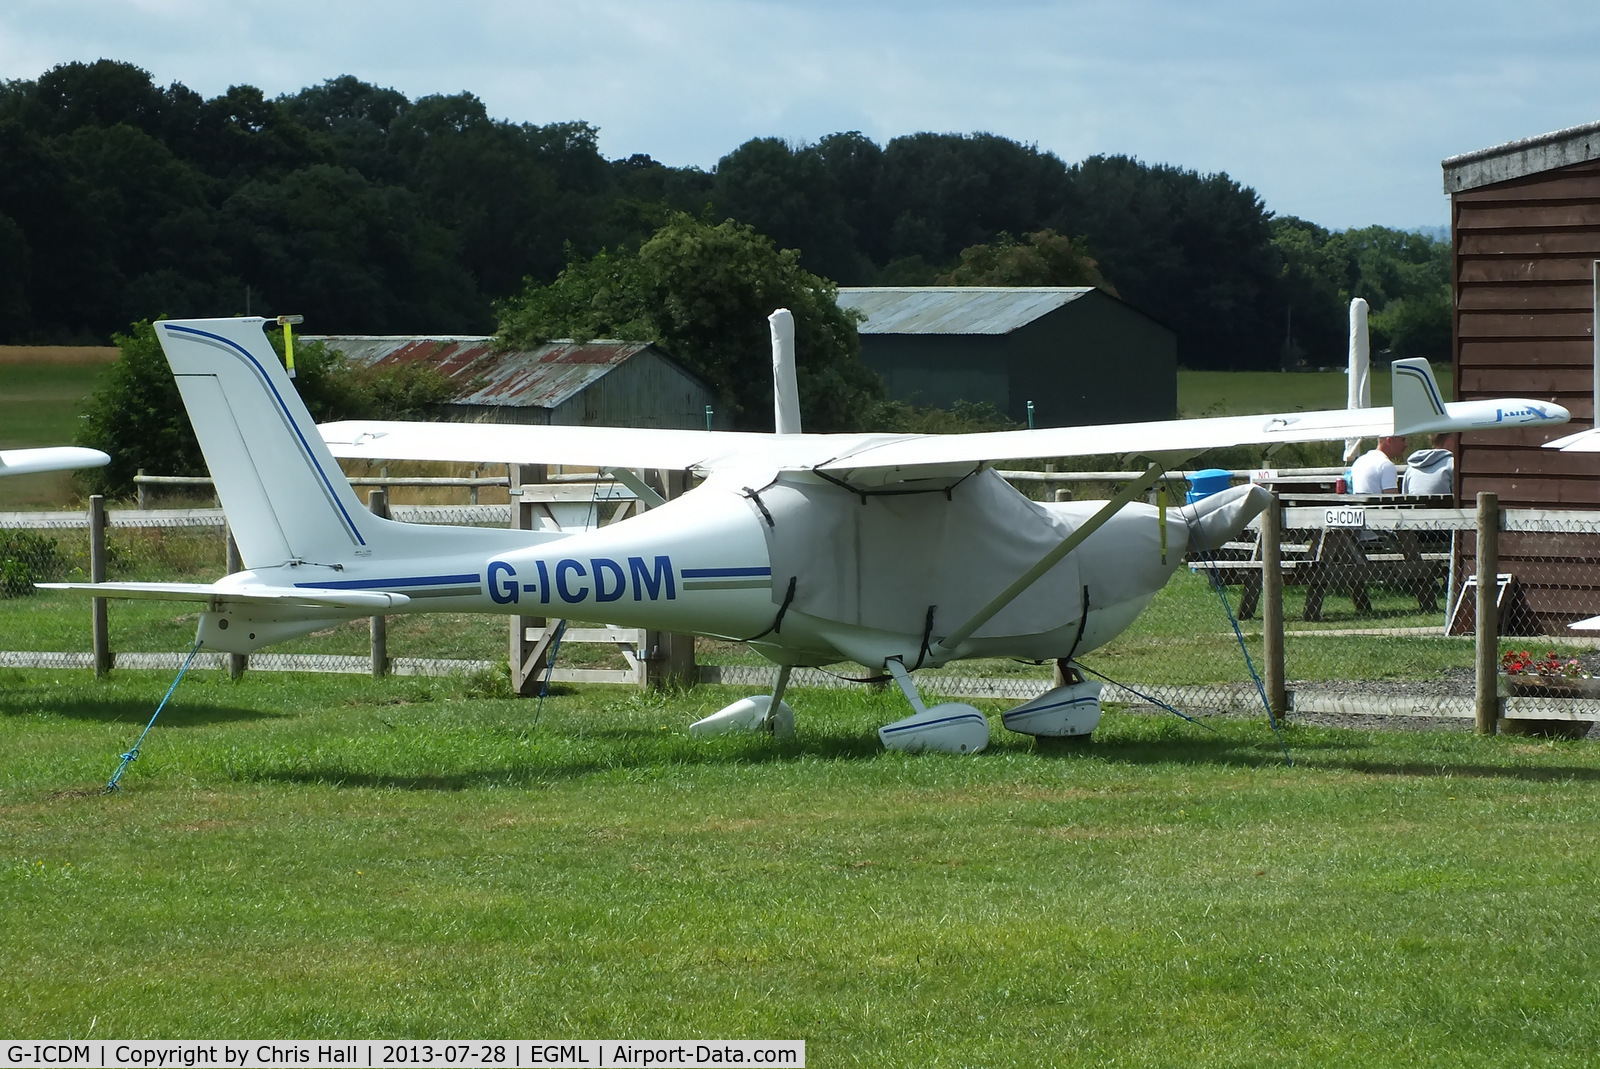 G-ICDM, 2007 Jabiru UL-450 C/N PFA 274A-14436, at Daymn's Hall Farm, Upminster, Essex